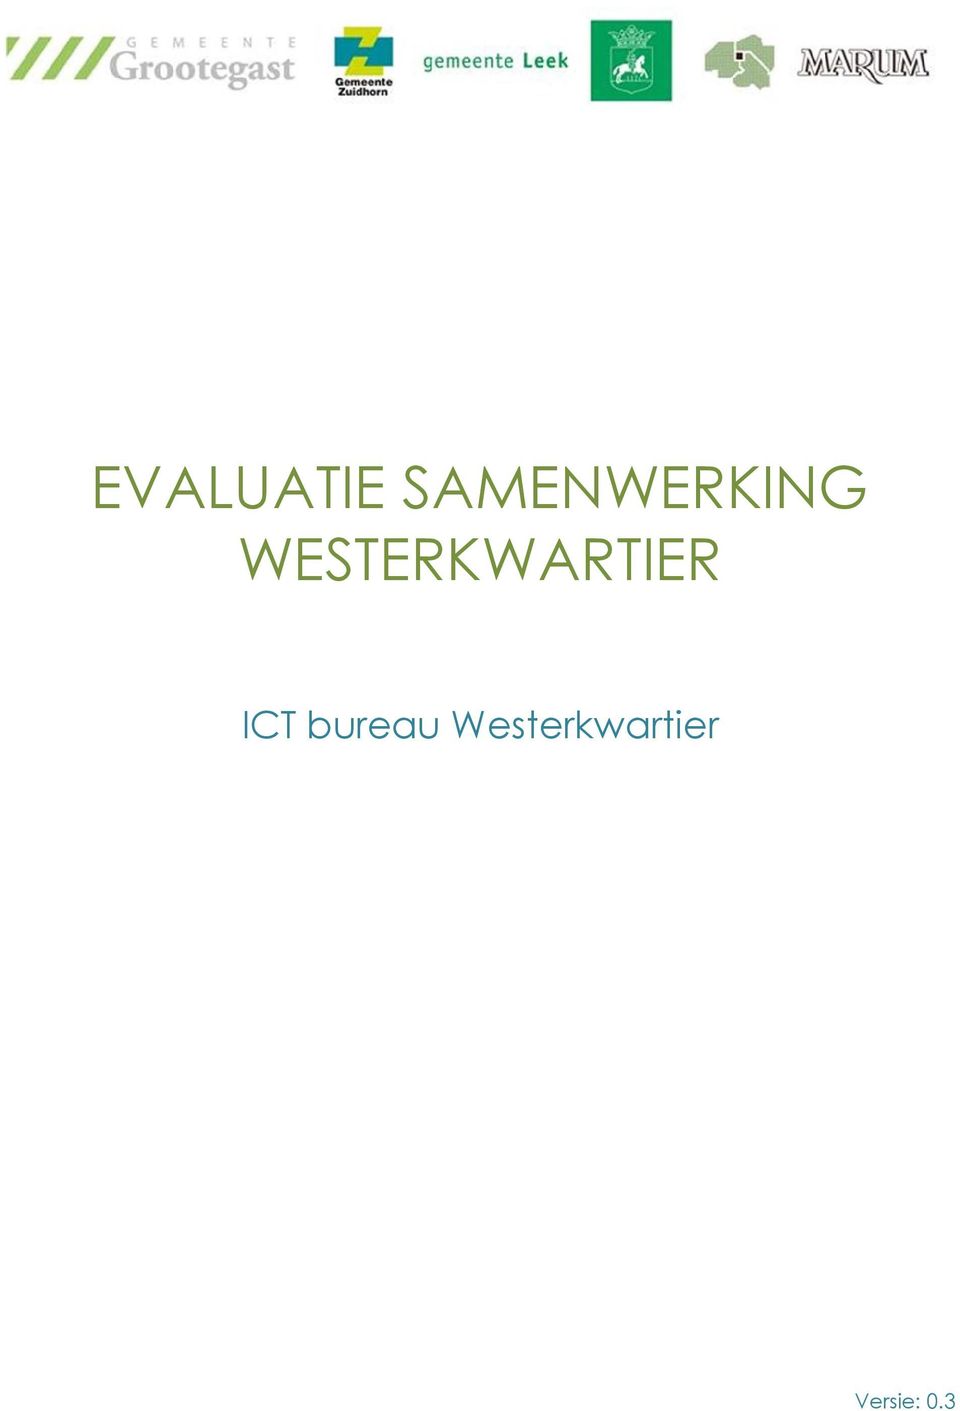 WESTERKWARTIER ICT